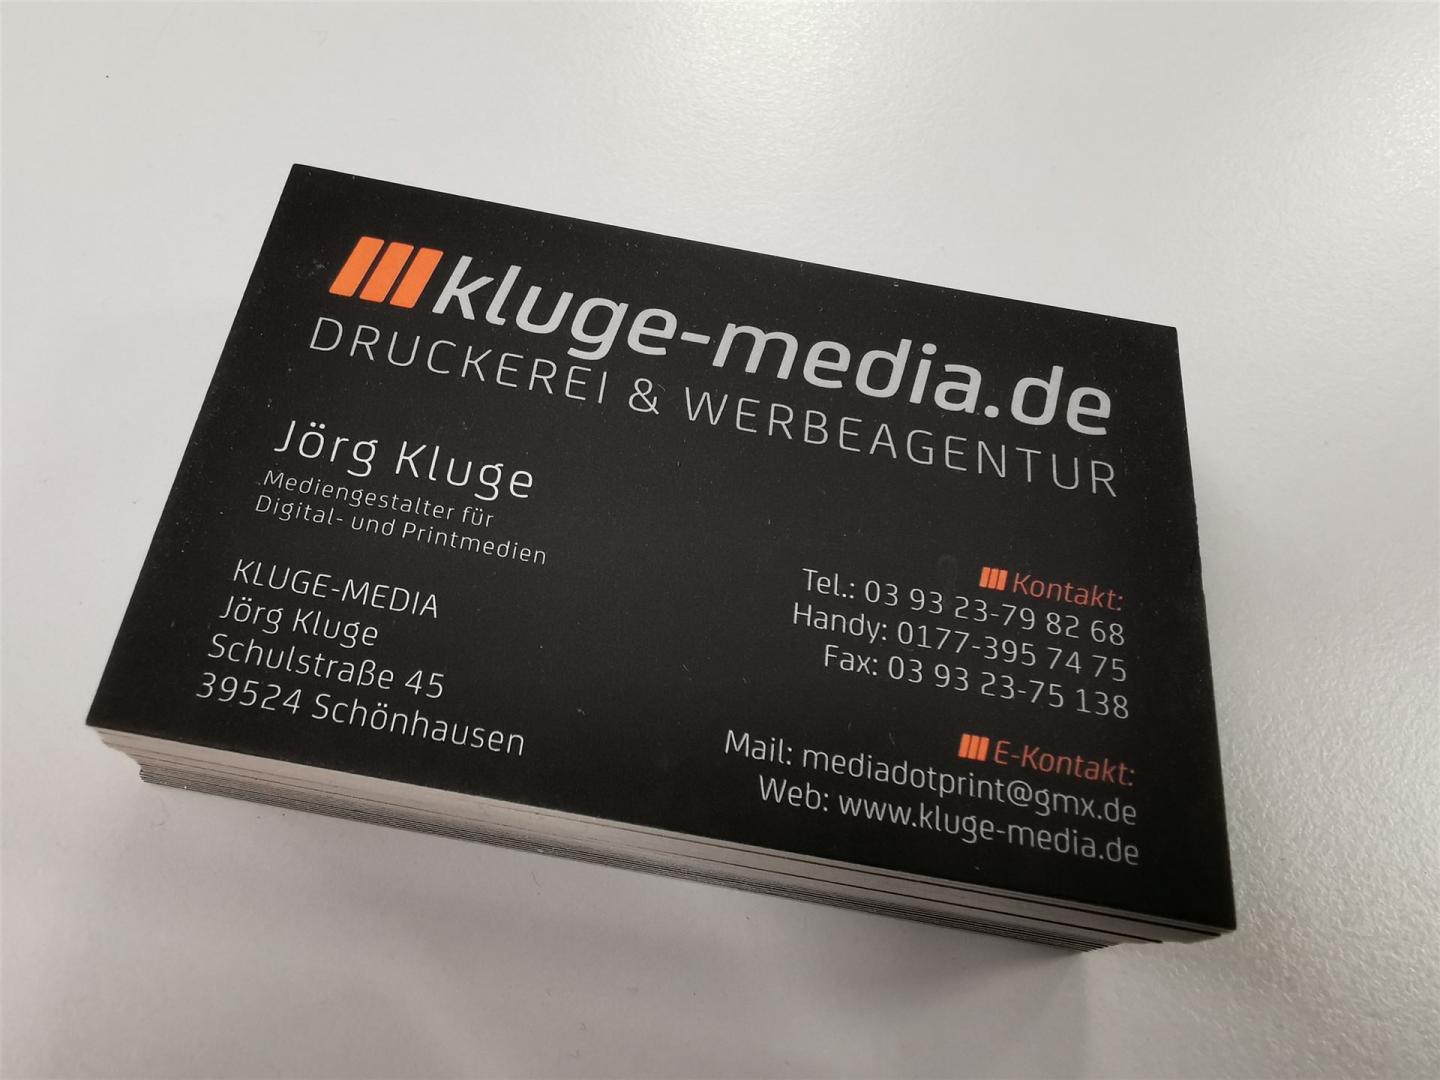 Druckerei und Werbeagentur, kluge-media.de aus dem Landkreis Stendal